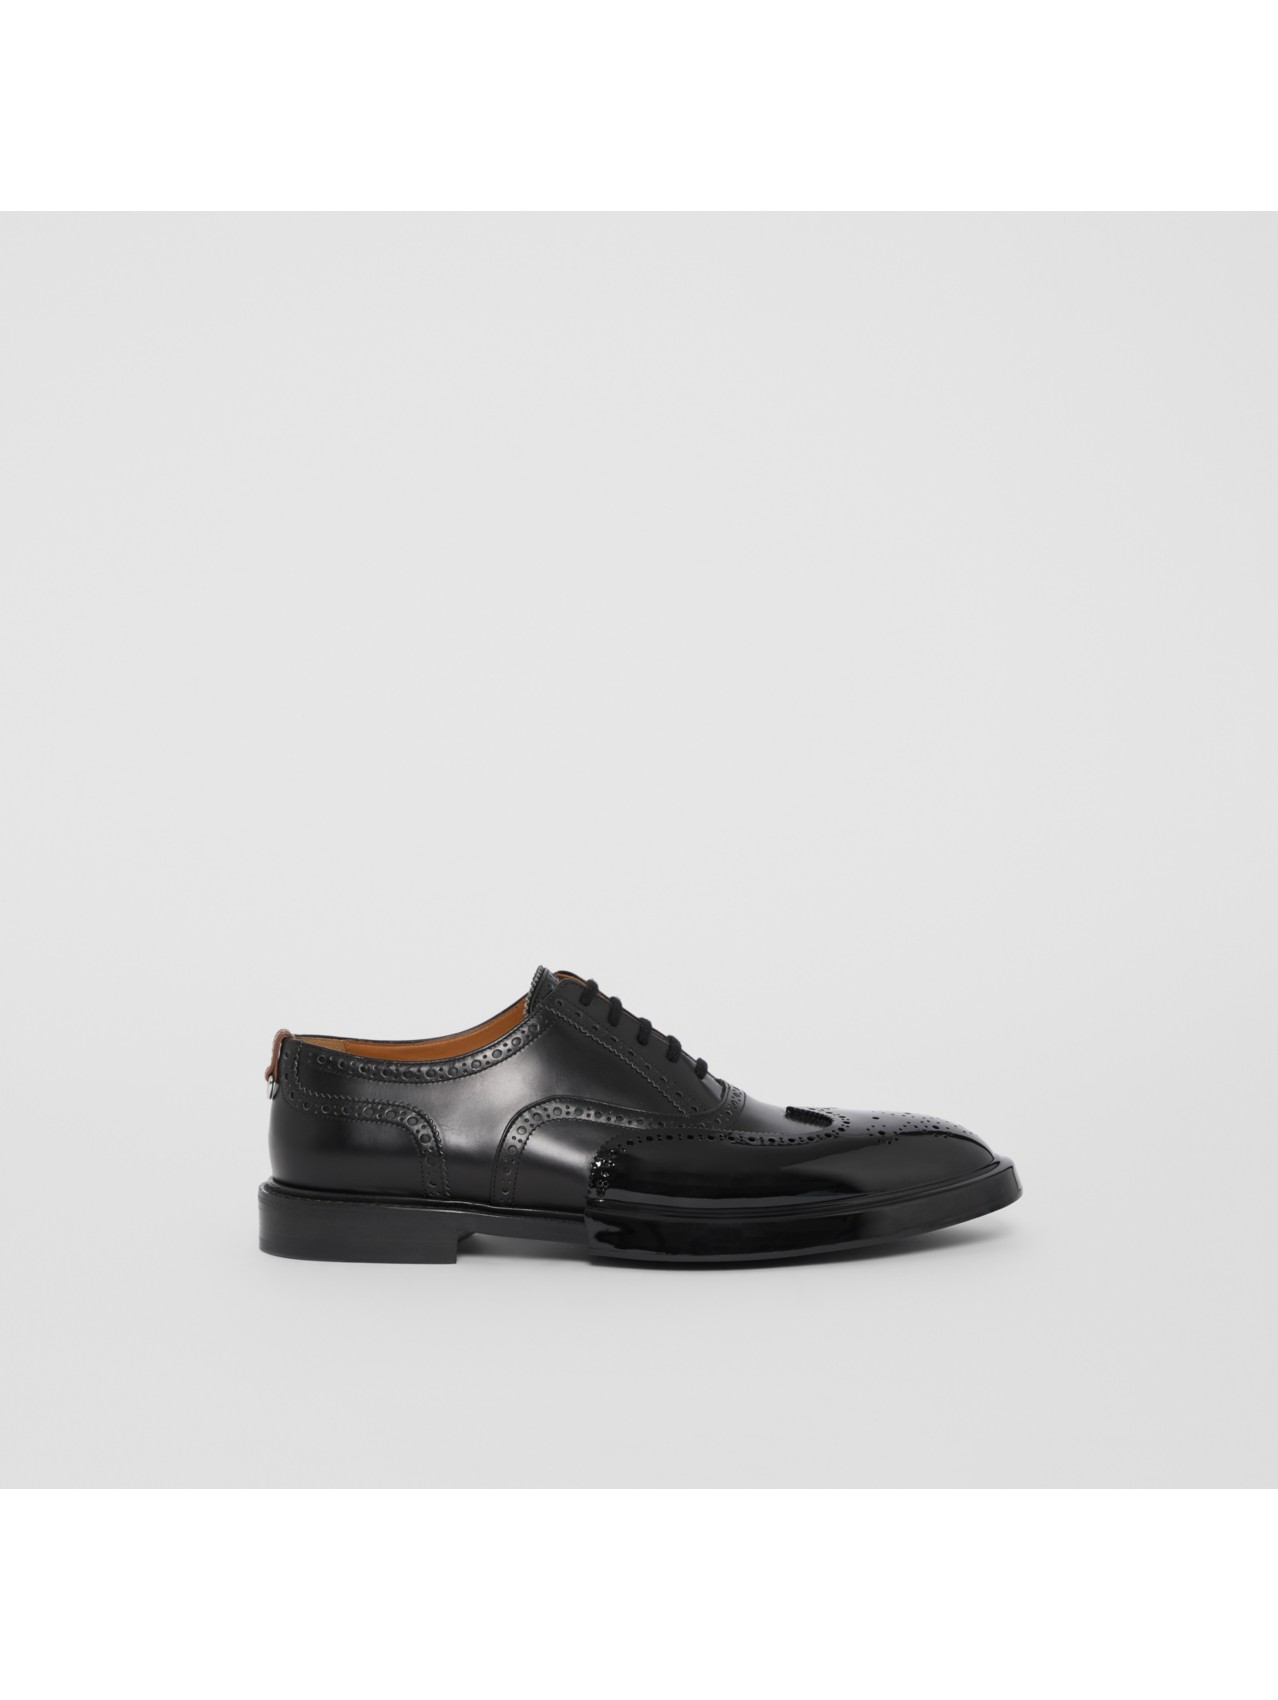 Men’s Shoes | Burberry